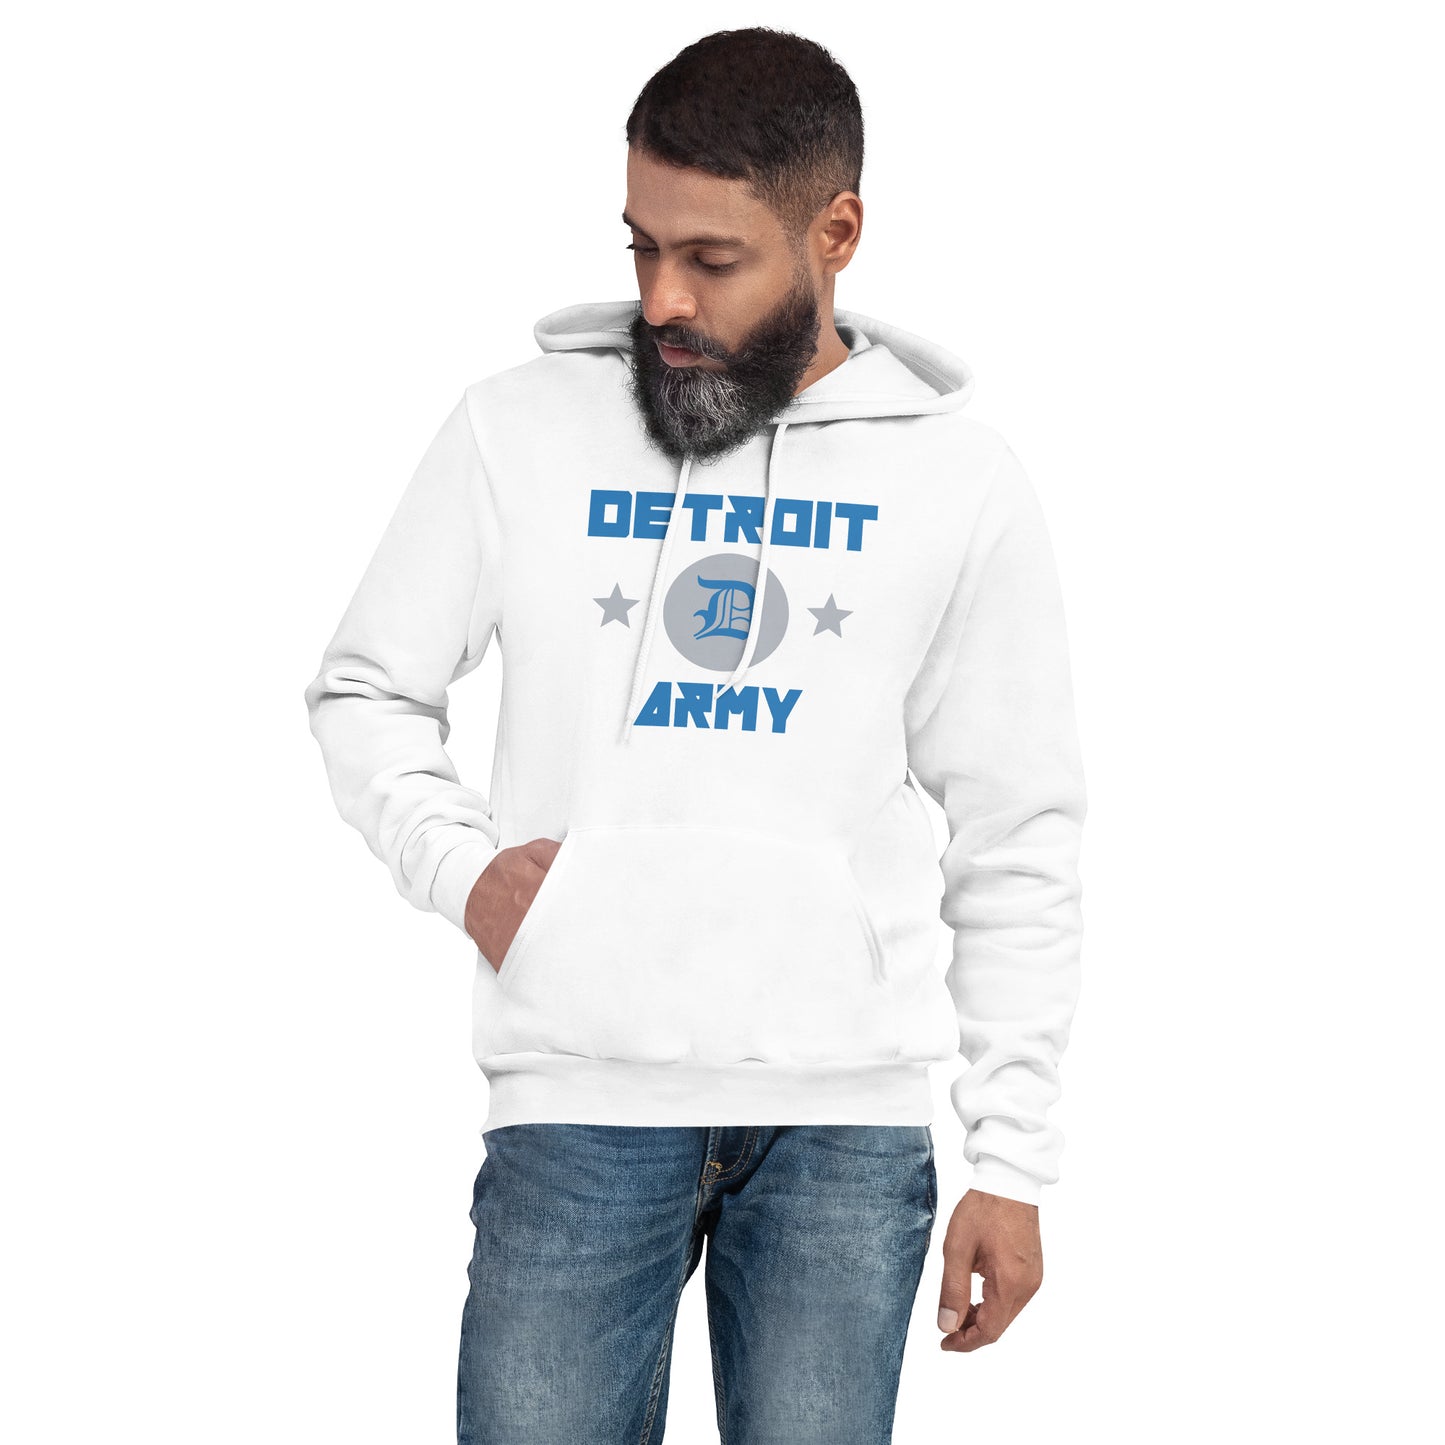 Detroit Army 'Gridiron' - White Unisex Hoodie